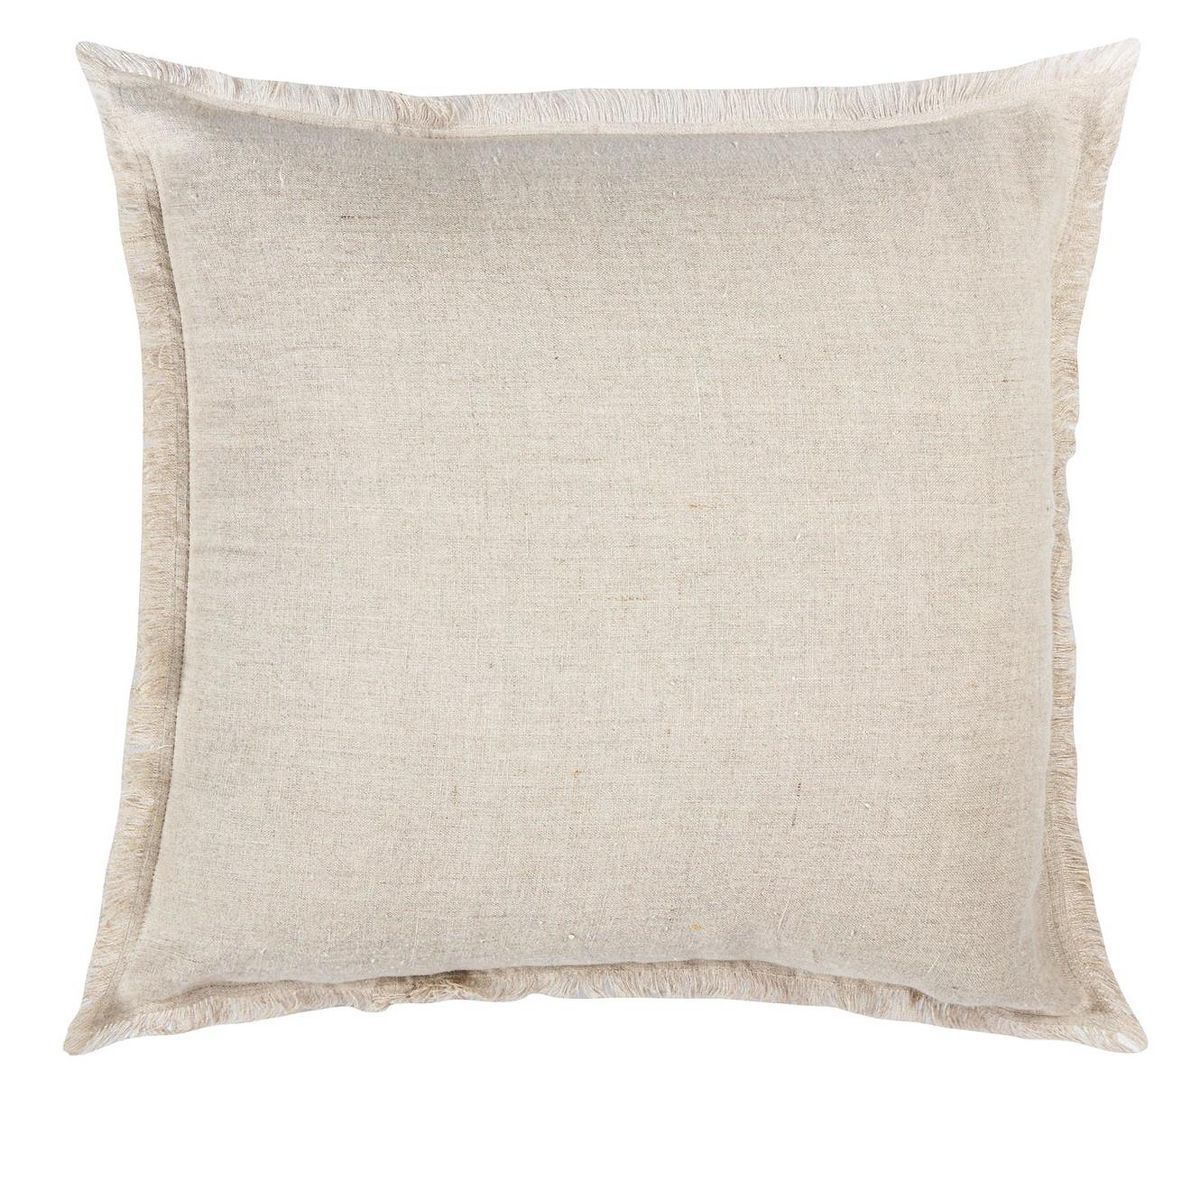 Beige Linen Pillow Cover | Target